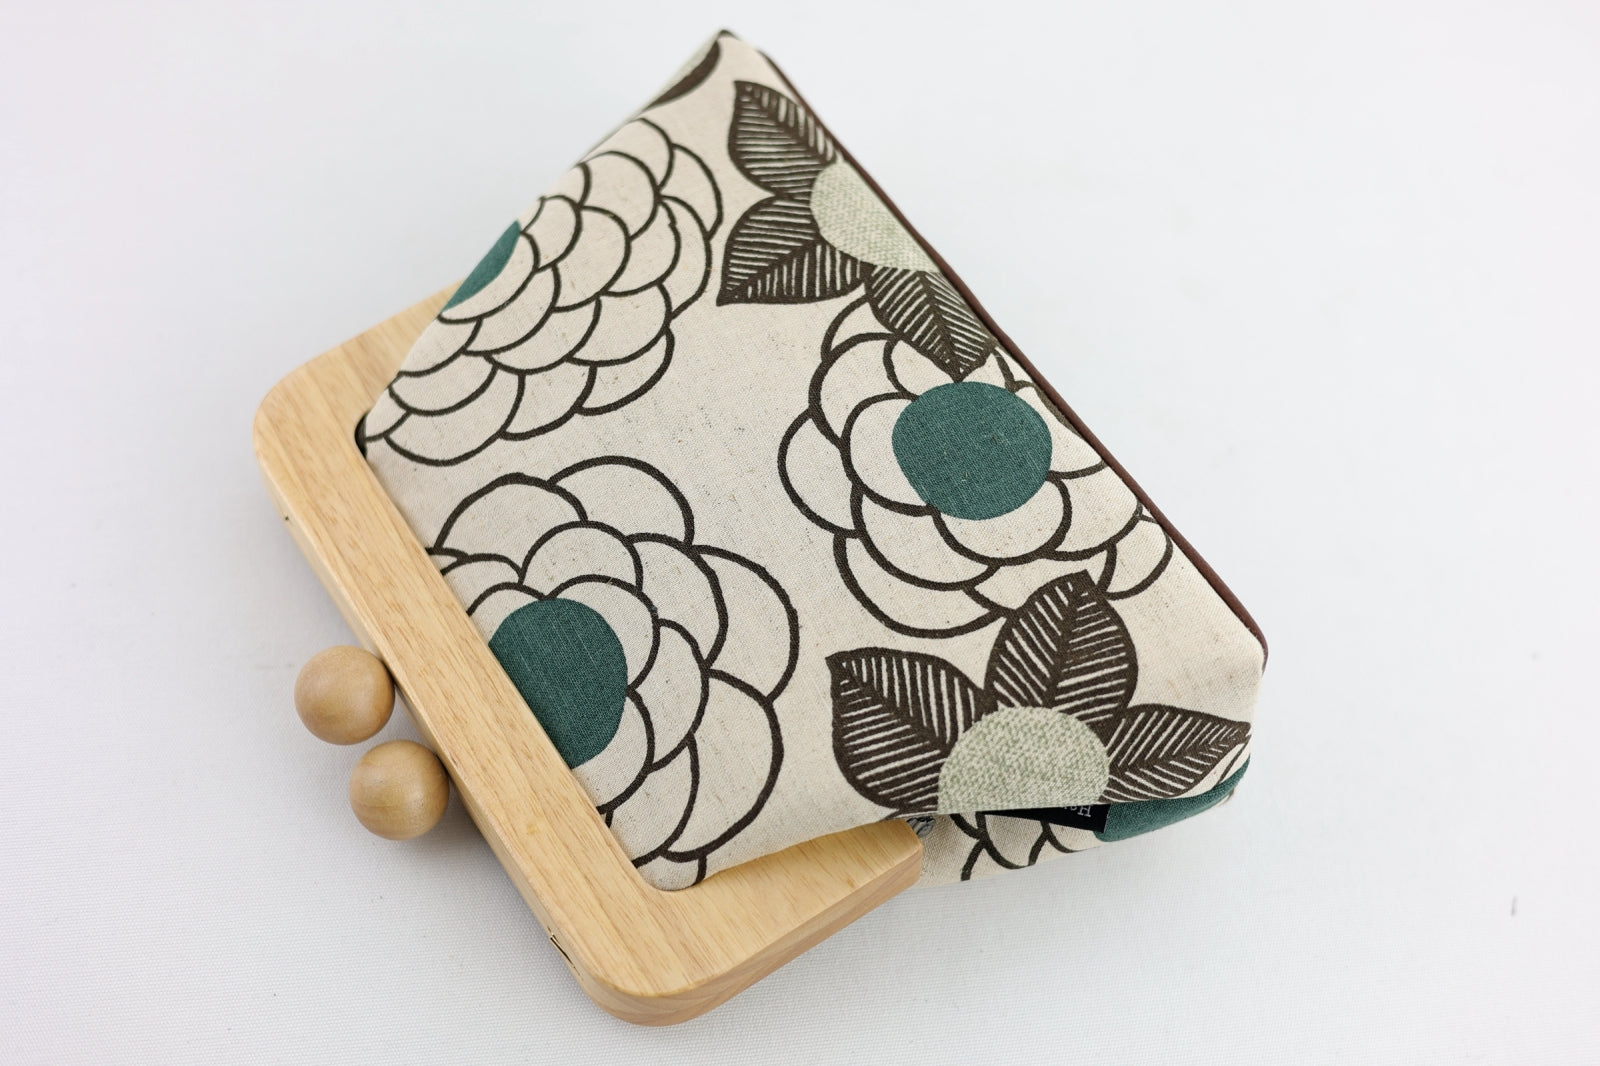 Rustic Linen Floral Wooden Frame Clutch Bag | PINK OASIS